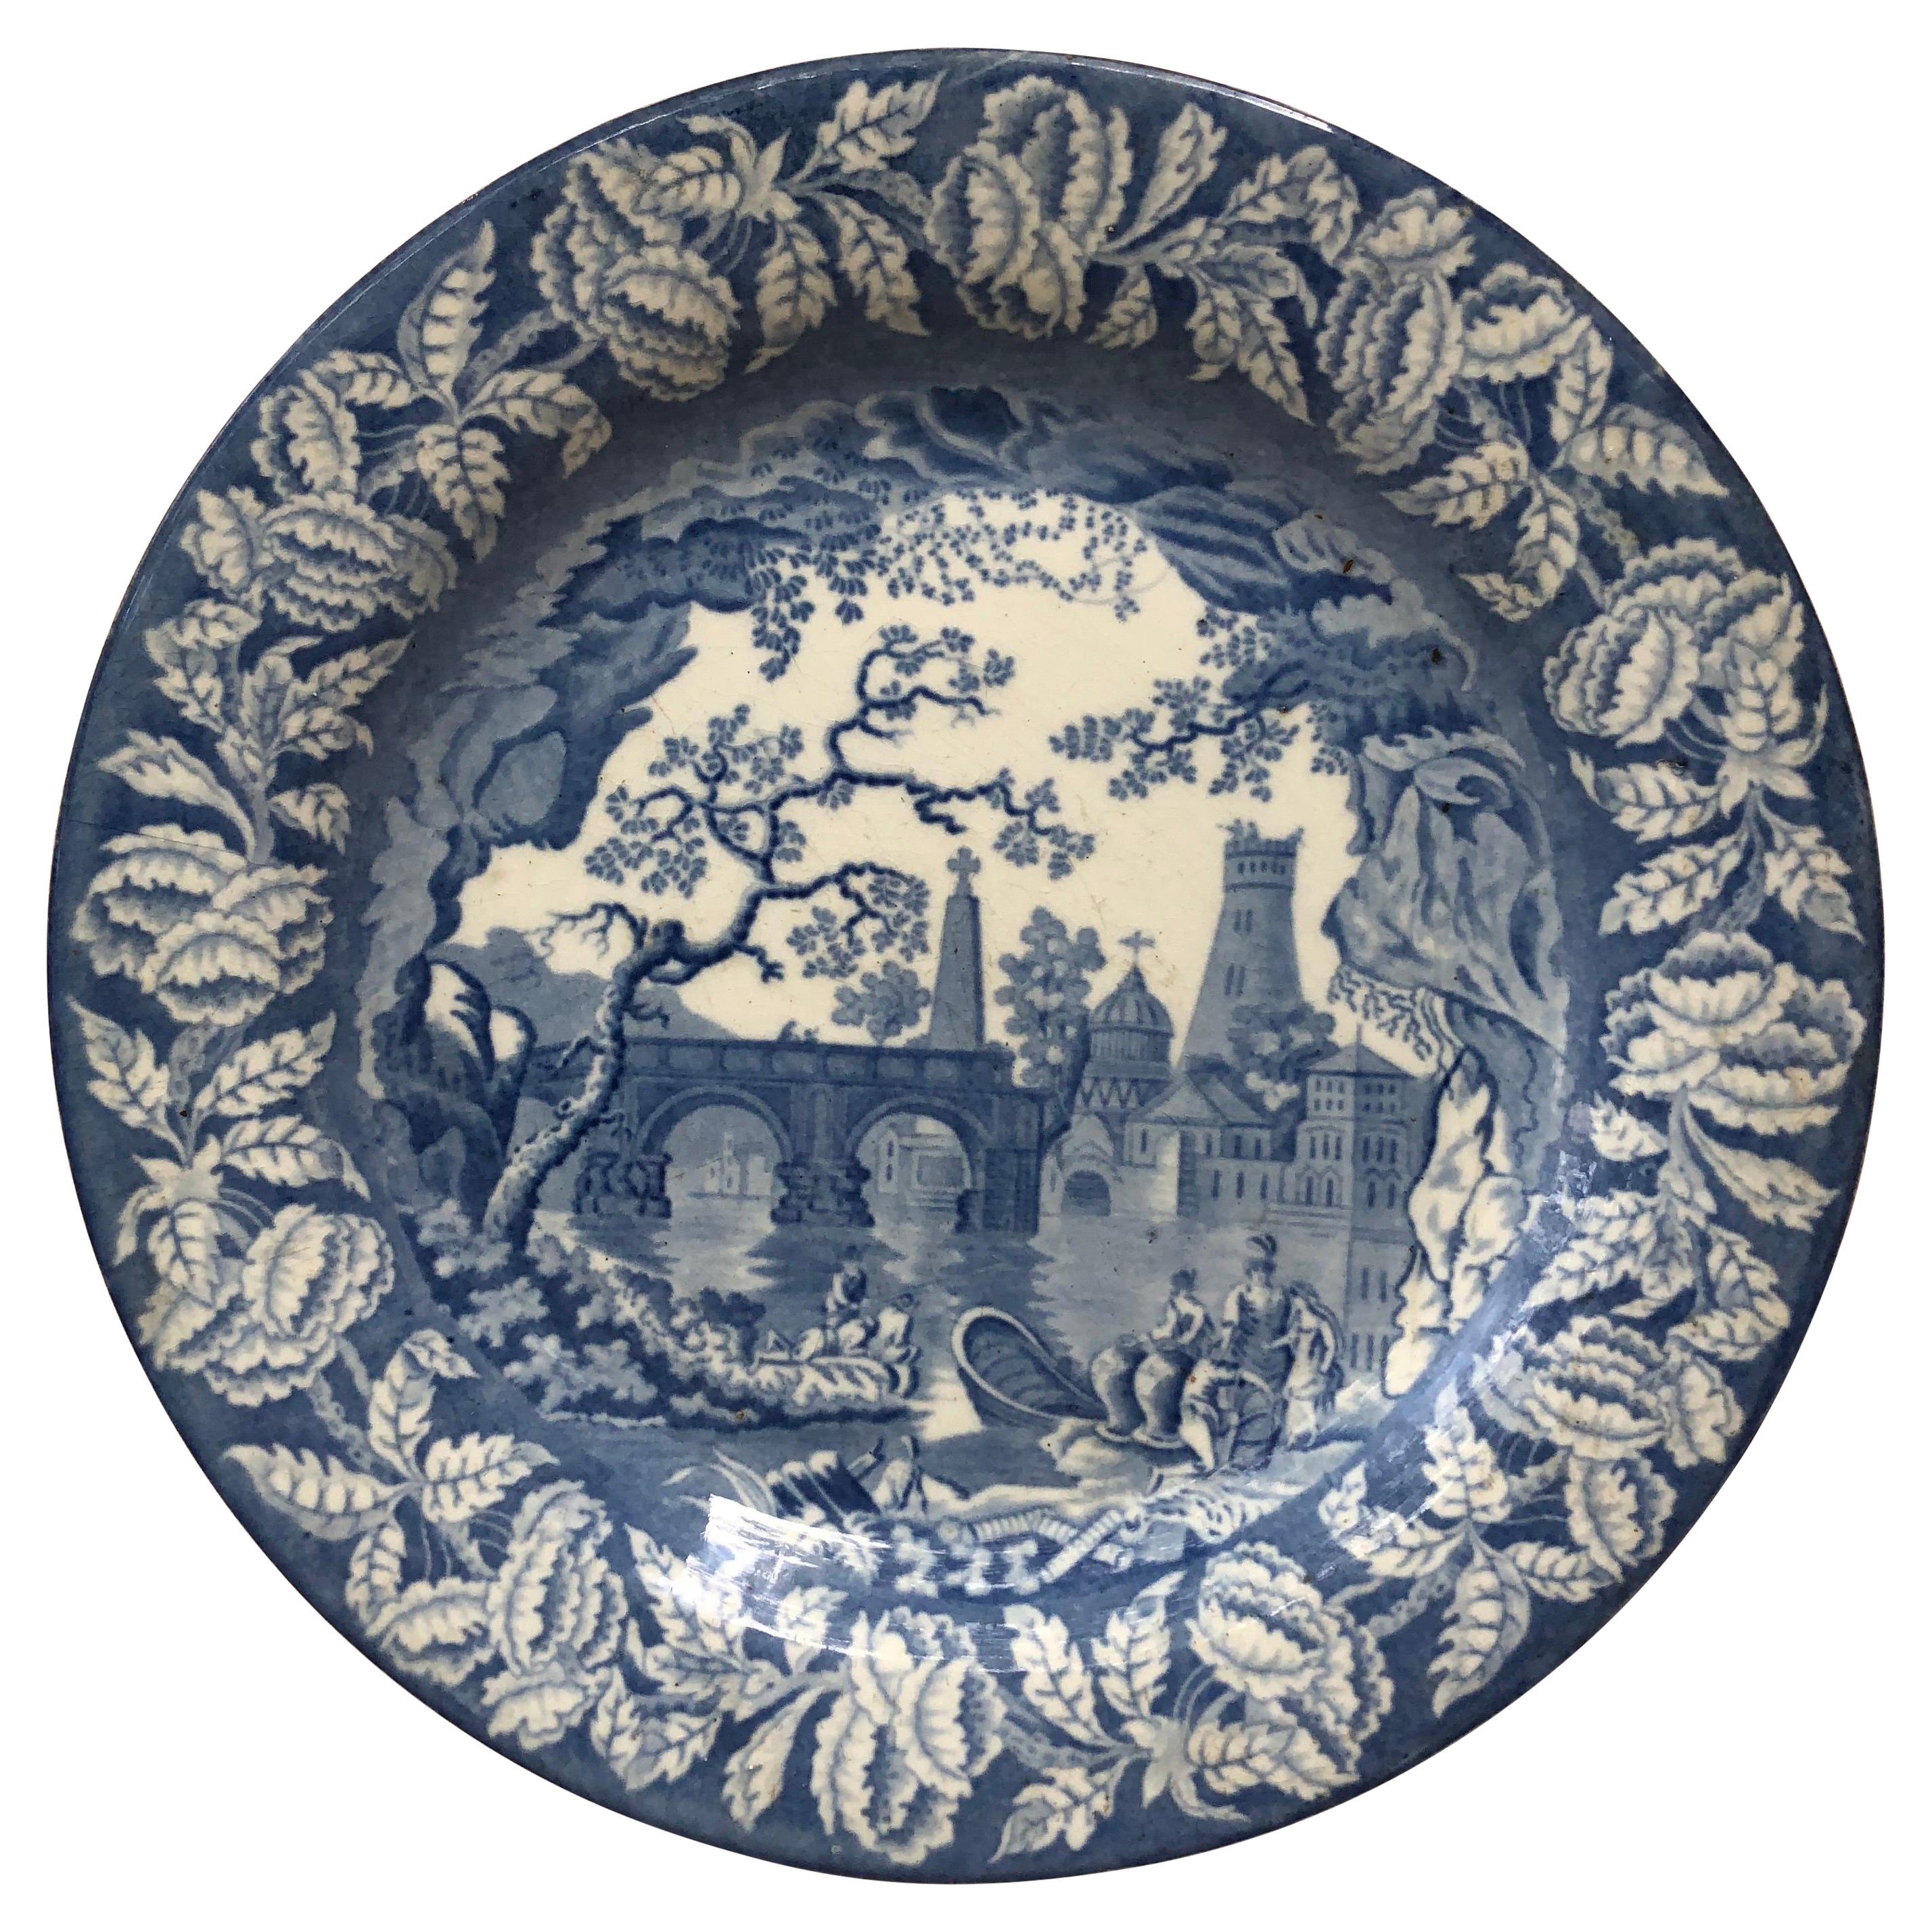 Assiette Staffordshire bleue et blanche victorienne du 19ème siècle